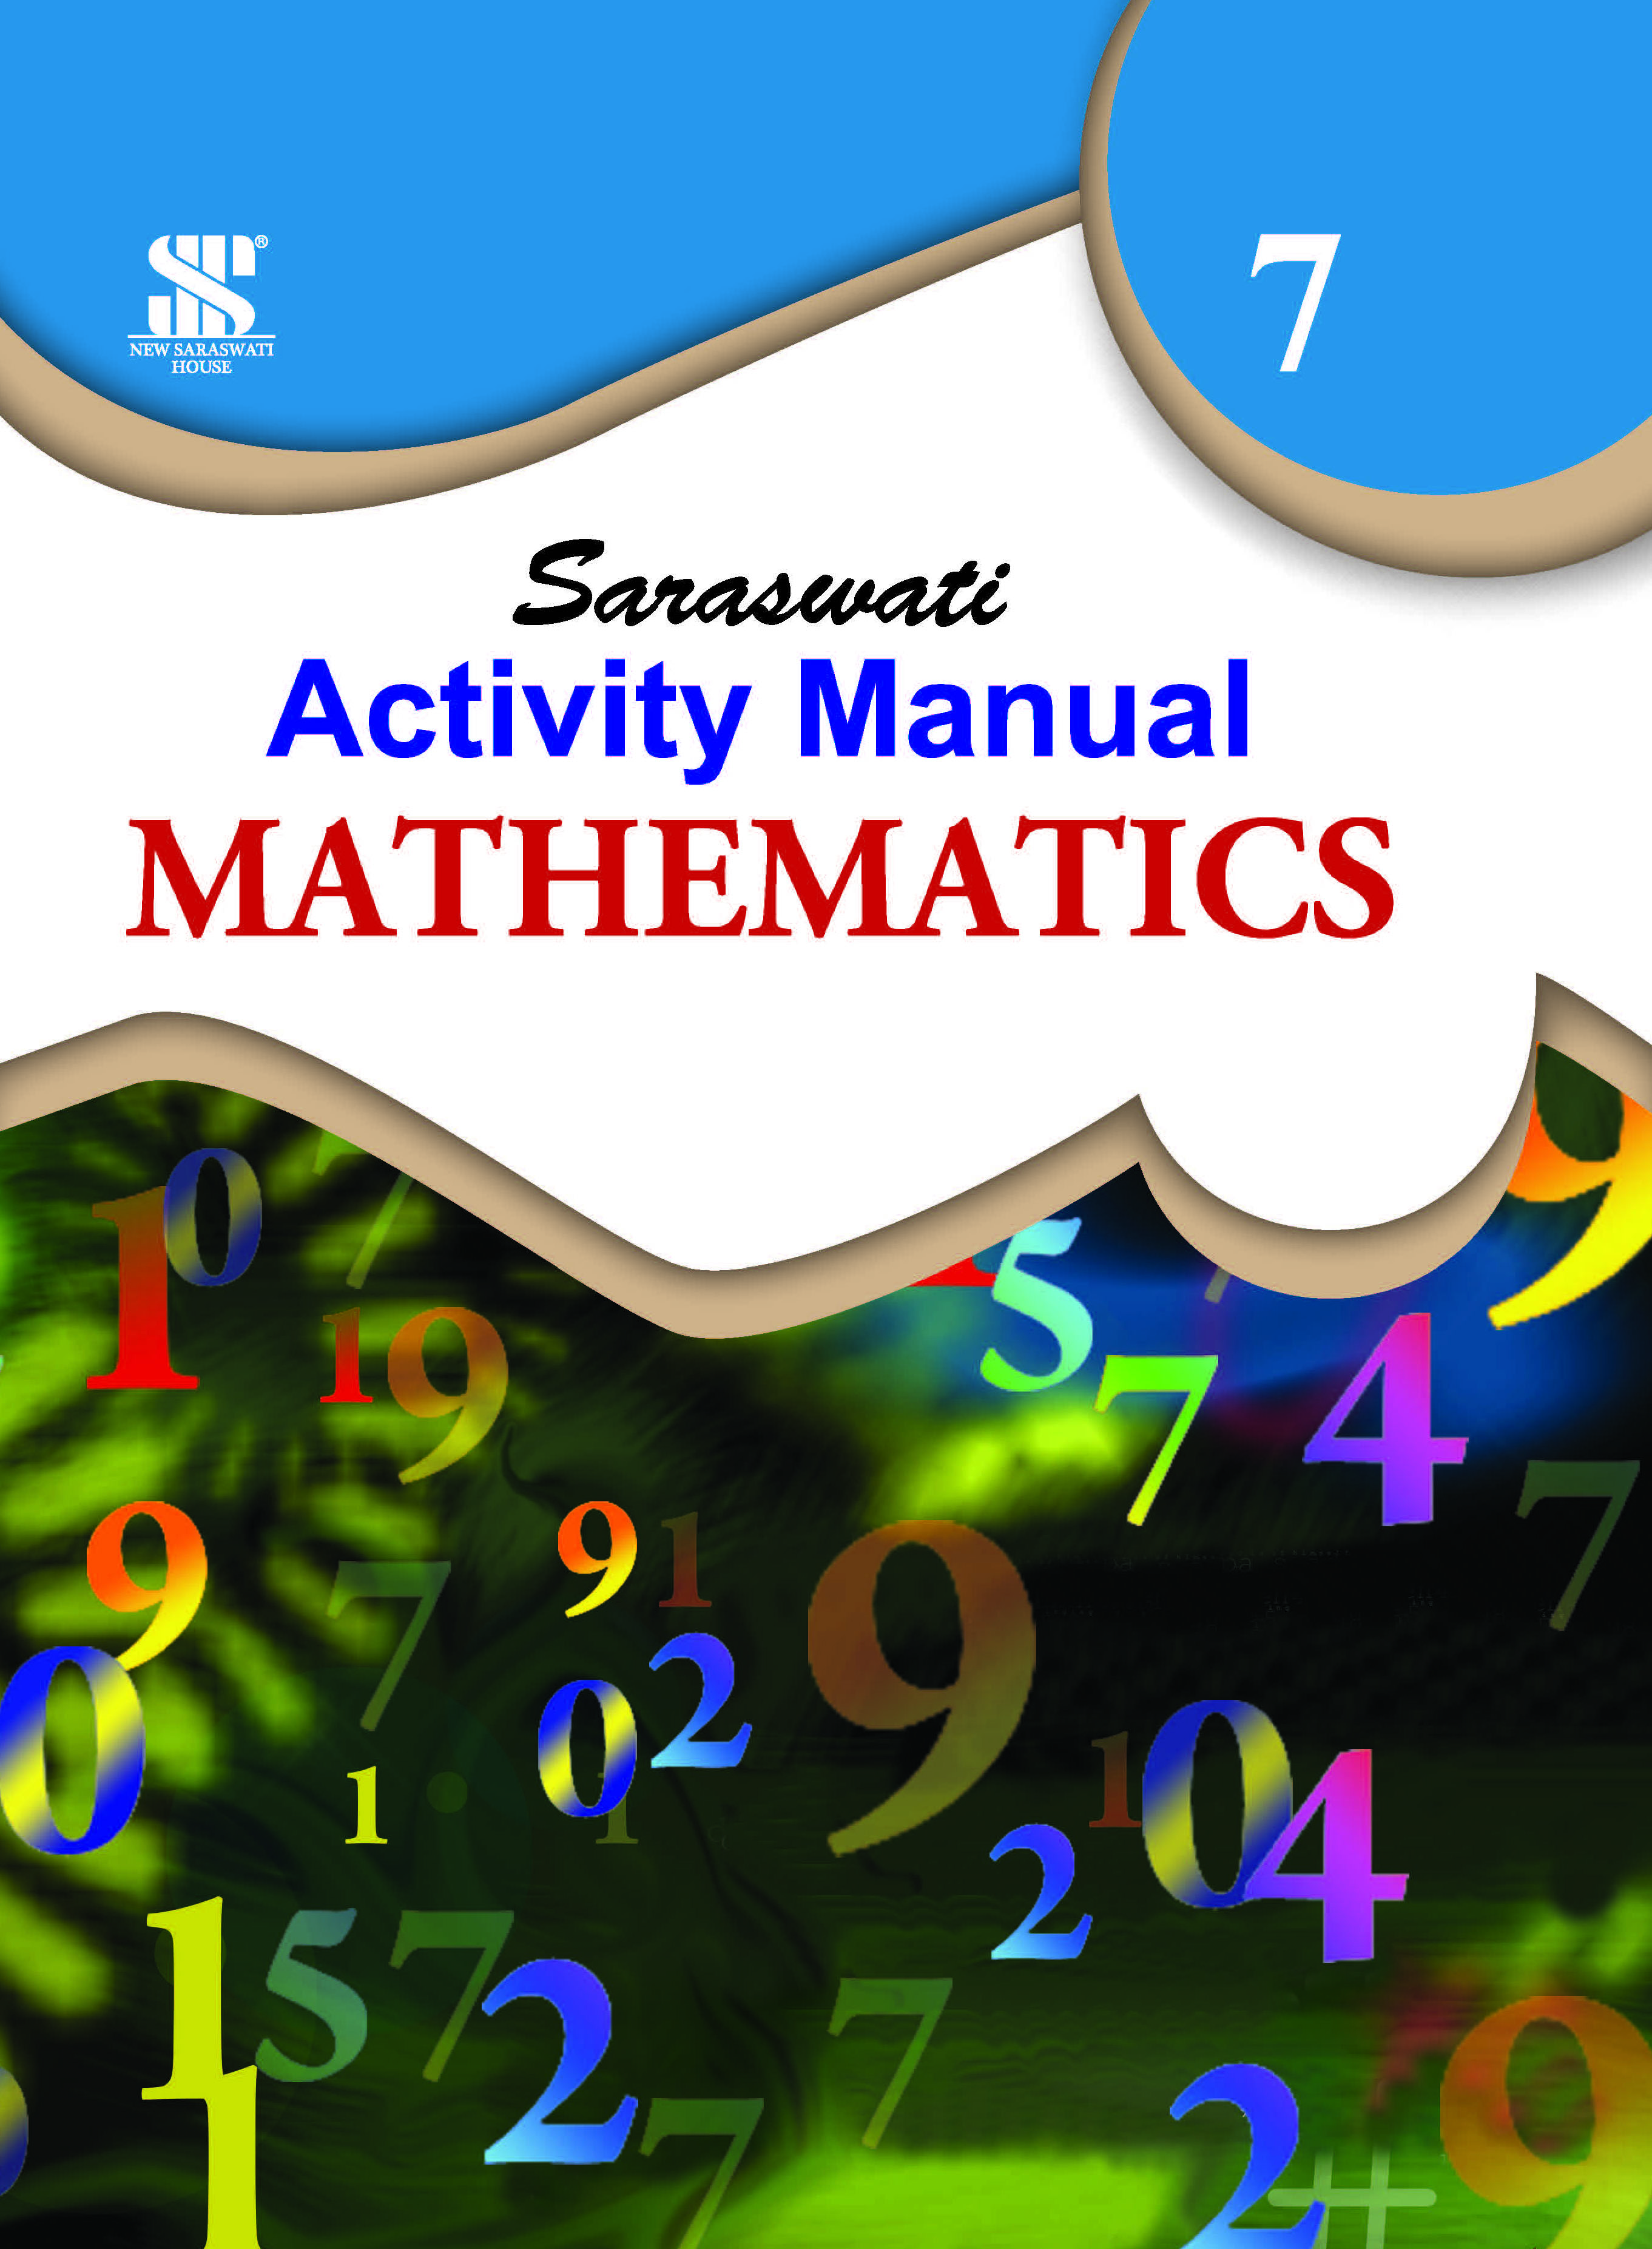 Mathematics Activity Manual